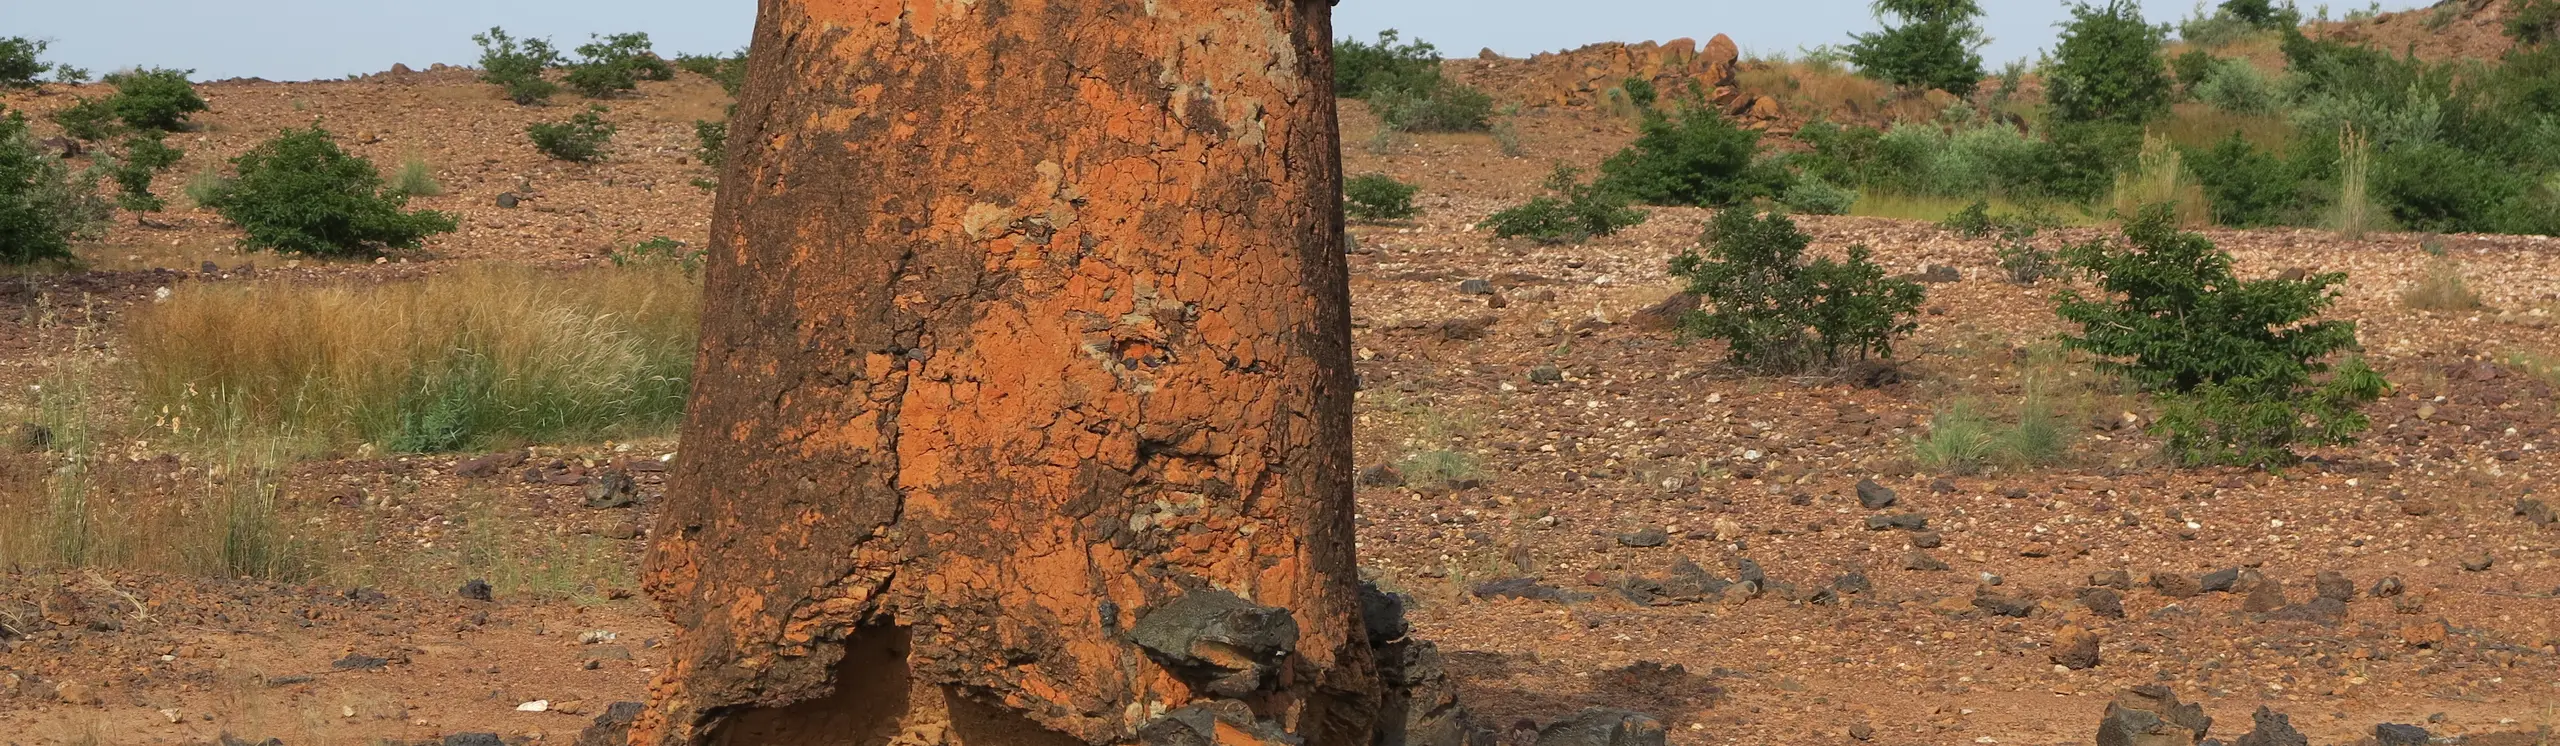 Sites de métallurgie ancienne du fer du Burkina Faso